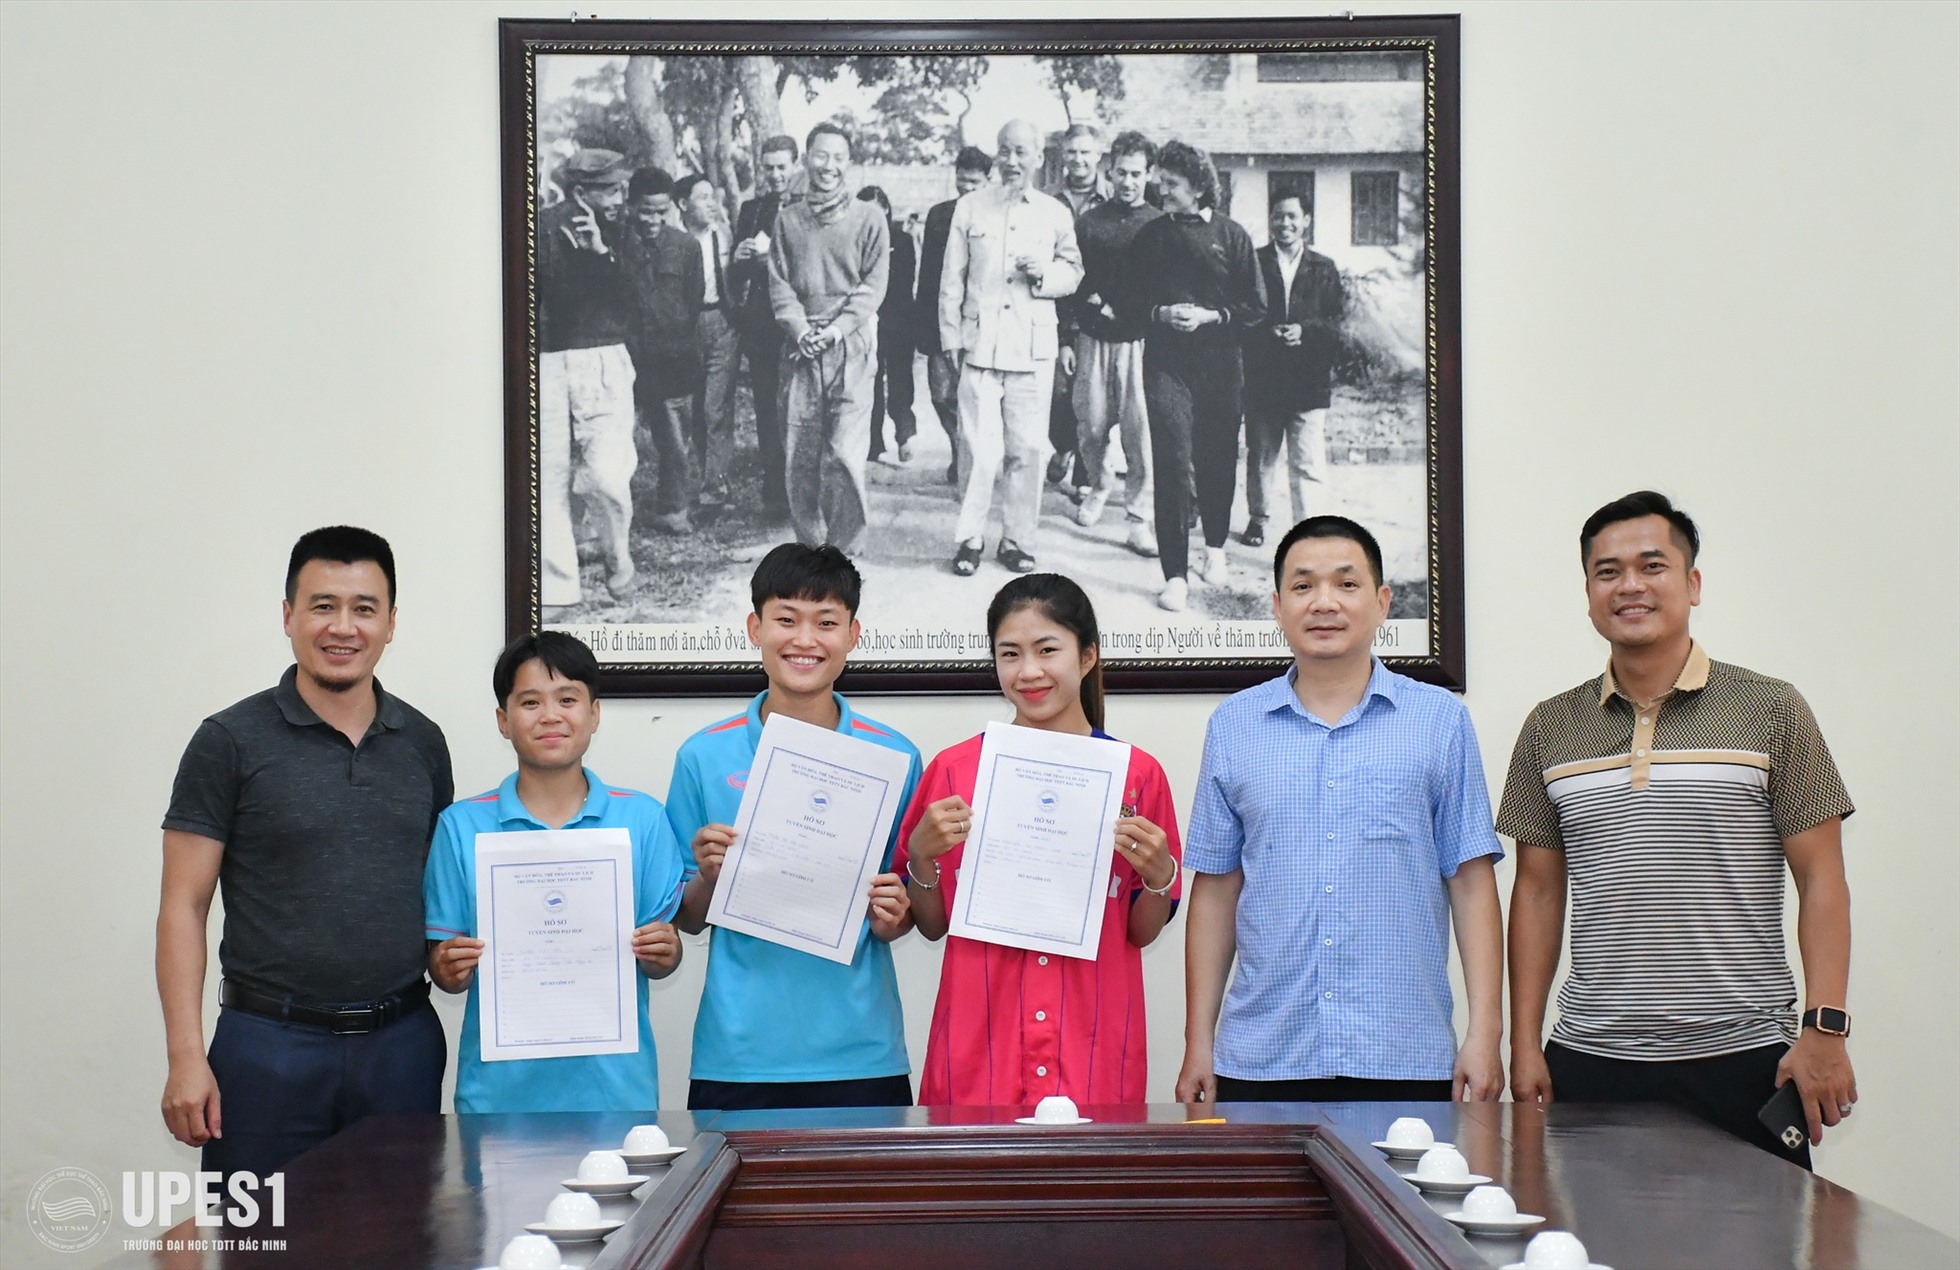 Thanh Nhã cùng 2 đồng đội Vạn Sự và Hải Linh hoàn tất thủ tục đăng kí gia nhập trường Đại học Thể dục Thể thao Bắc Ninh. Ảnh: UPES1